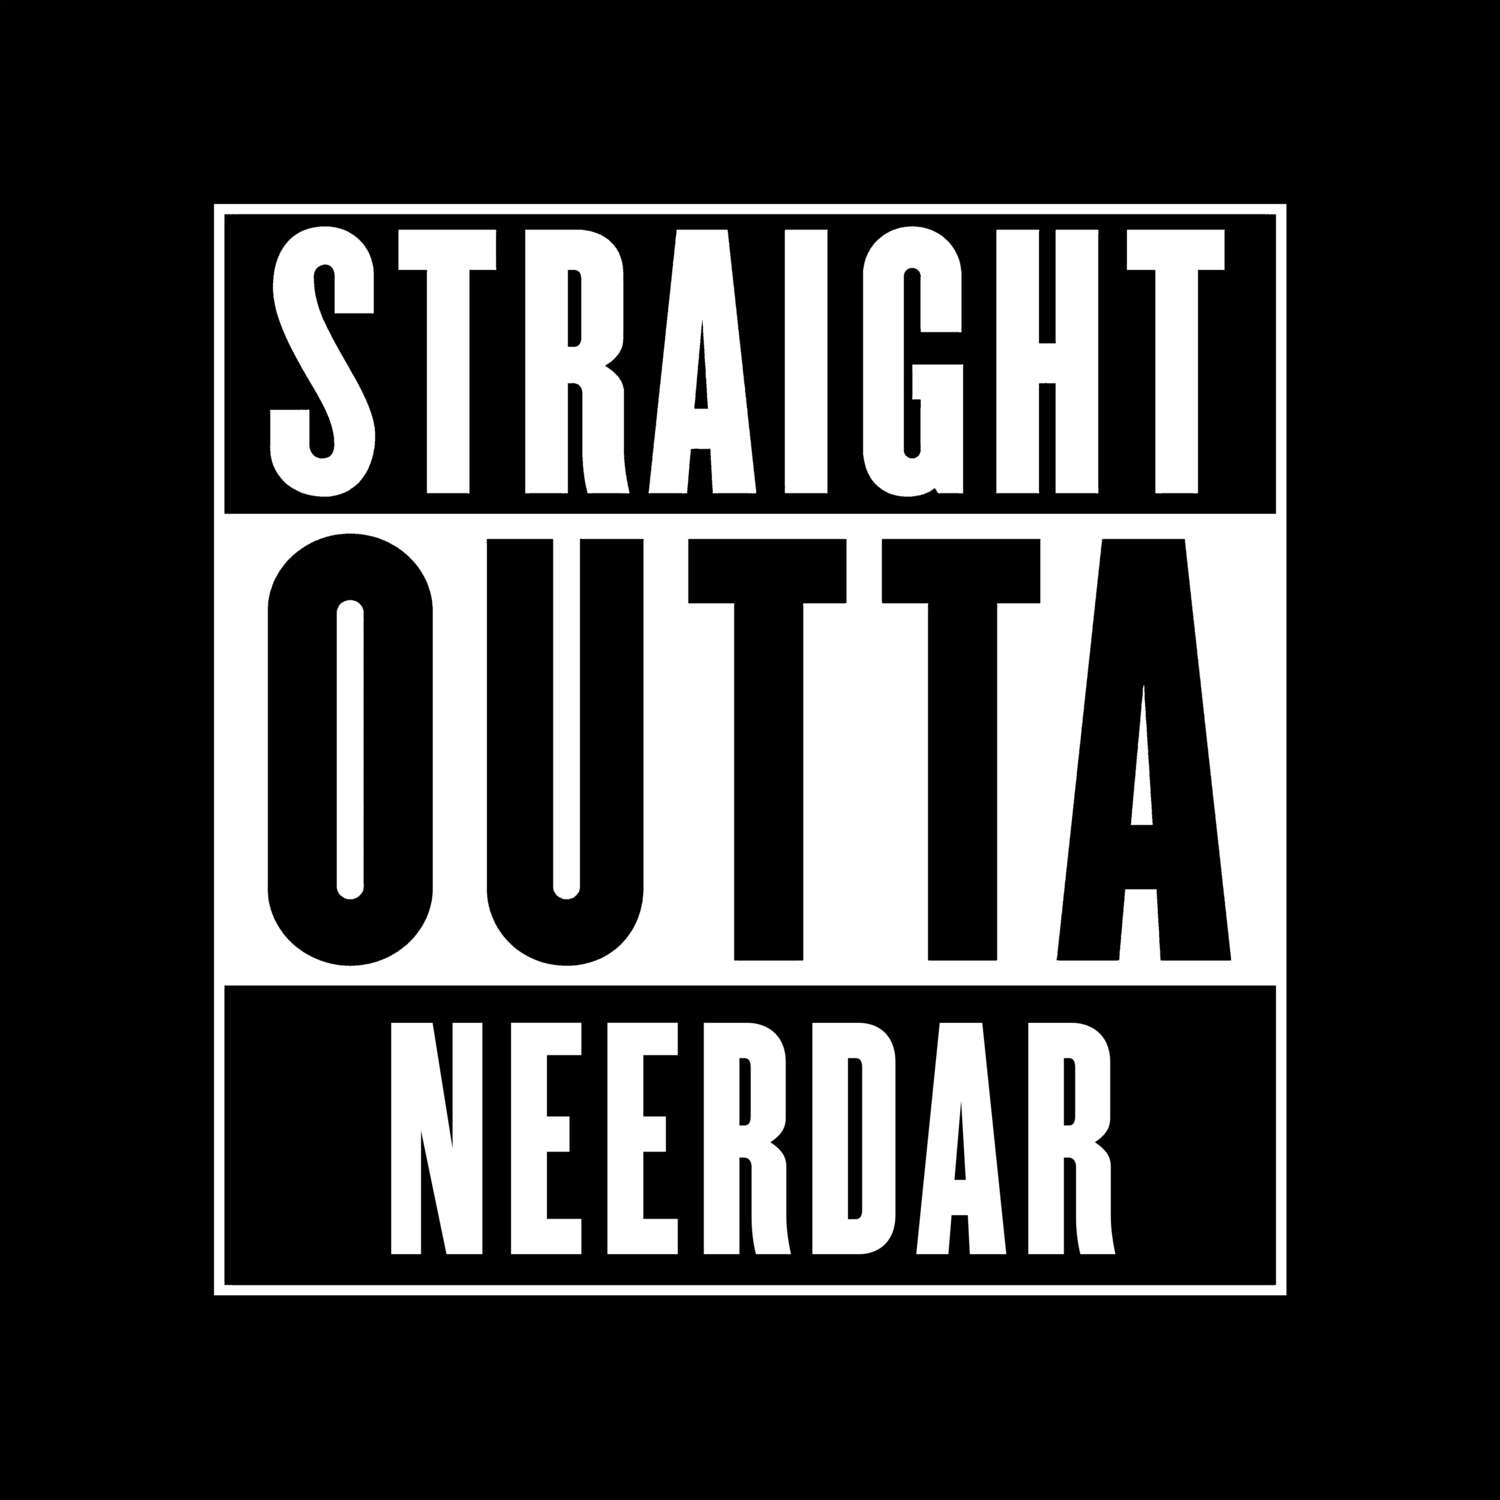 Neerdar T-Shirt »Straight Outta«